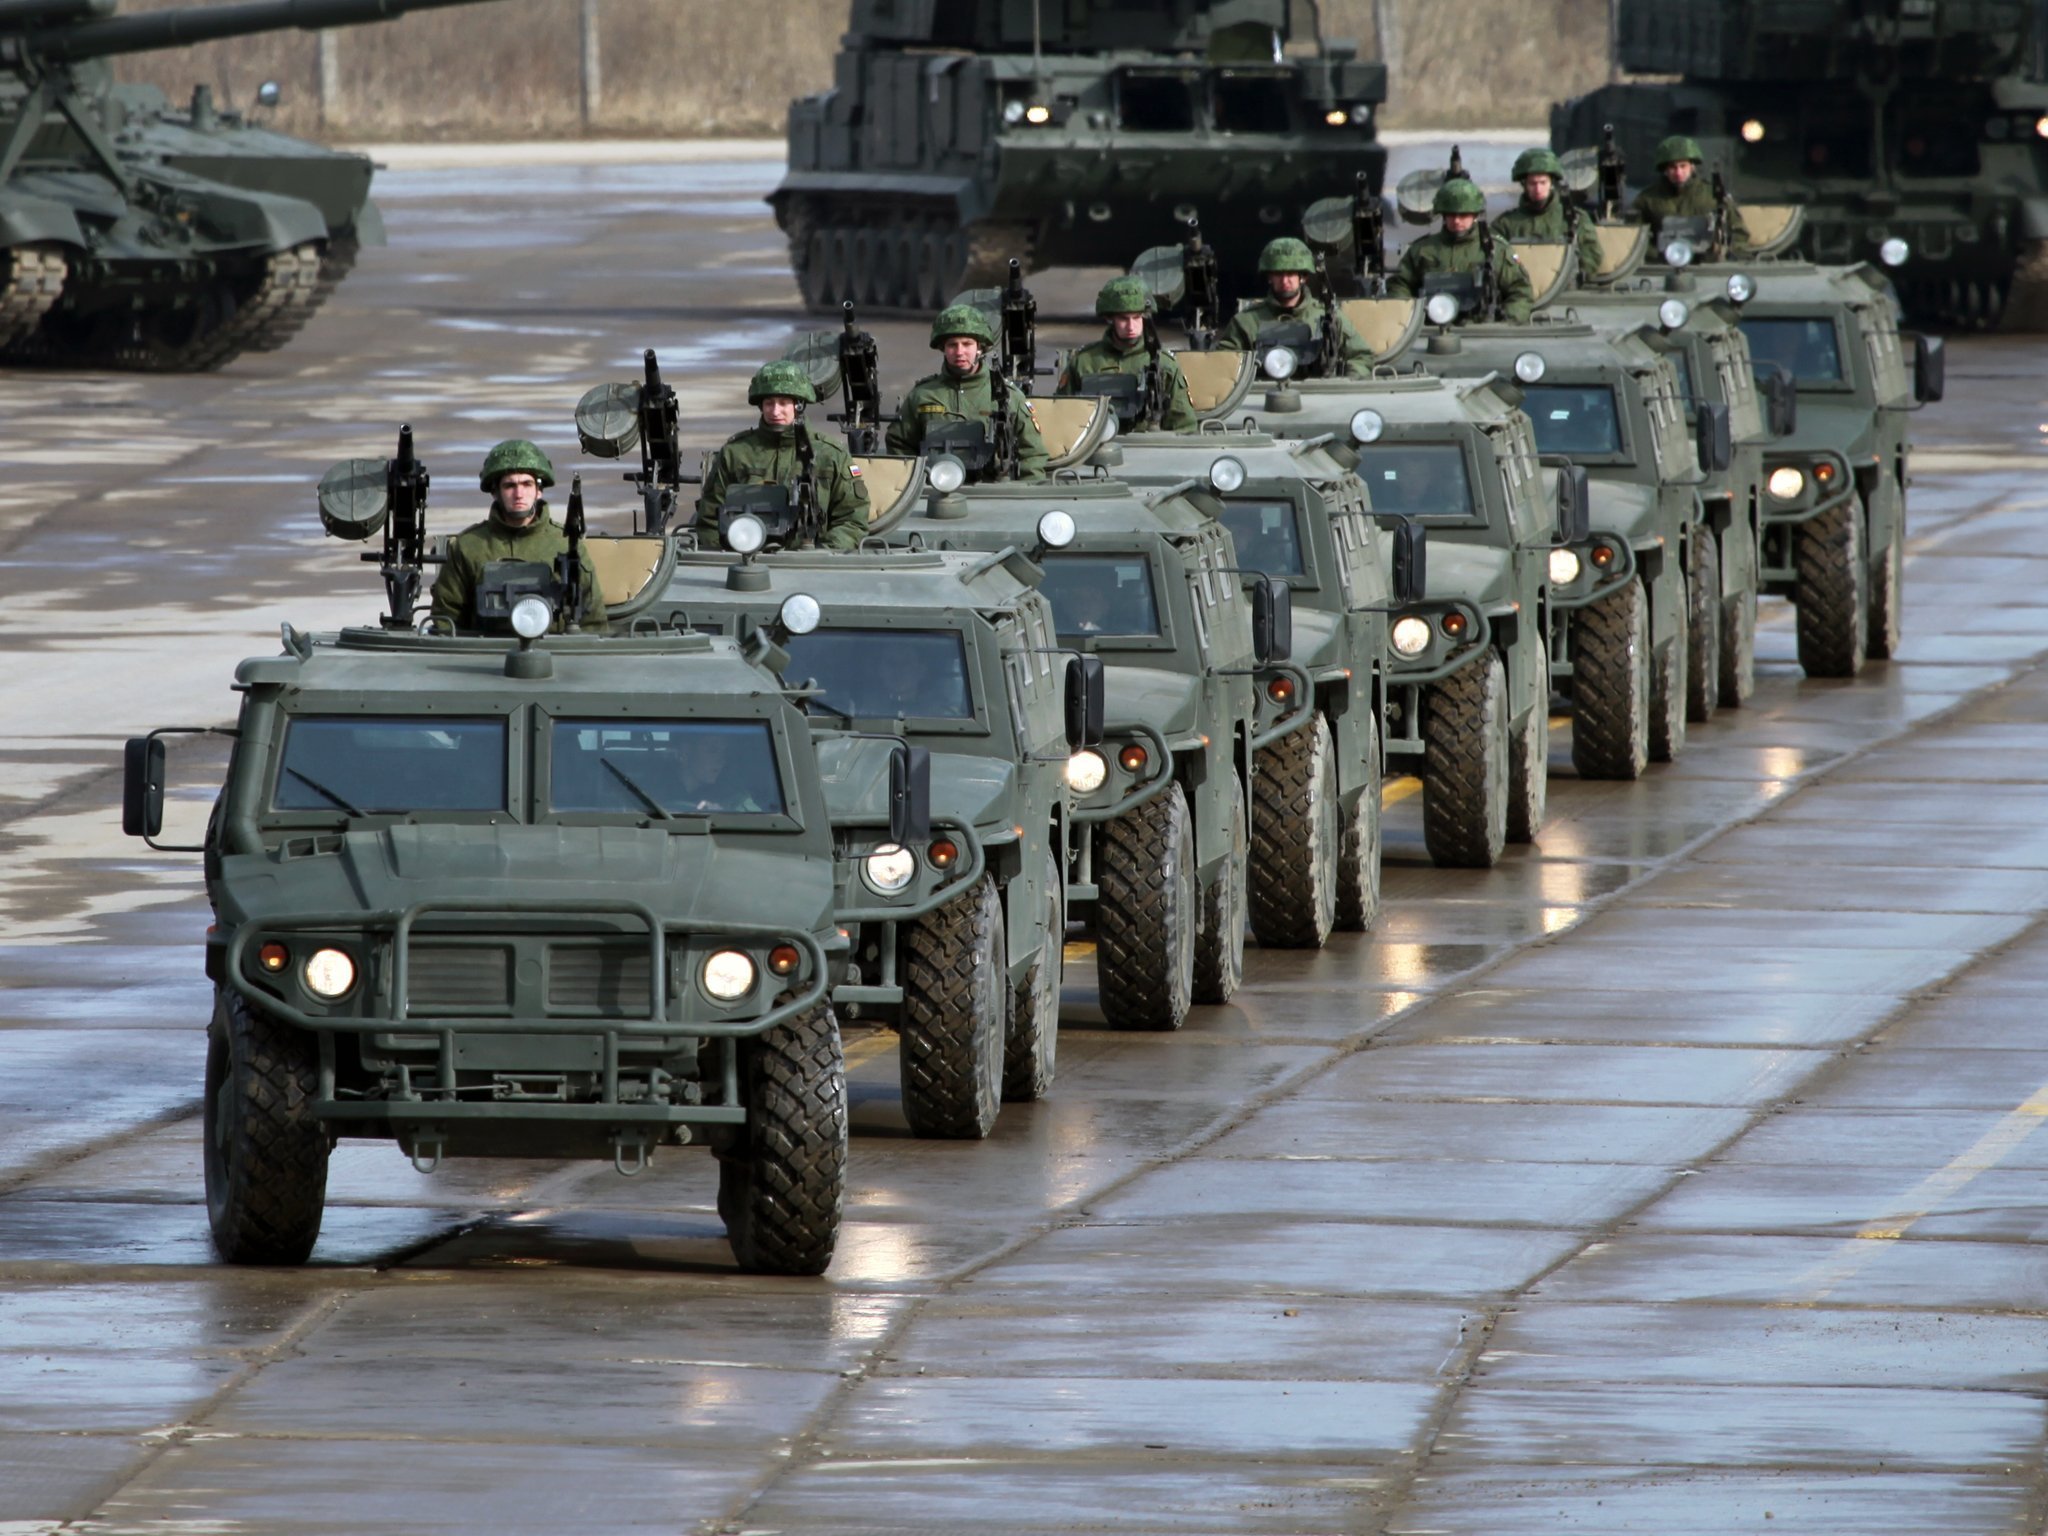 Много военных машин. Бронеавтомобиль тигр ВДВ. Колонна бронеавтомобилей тигр.